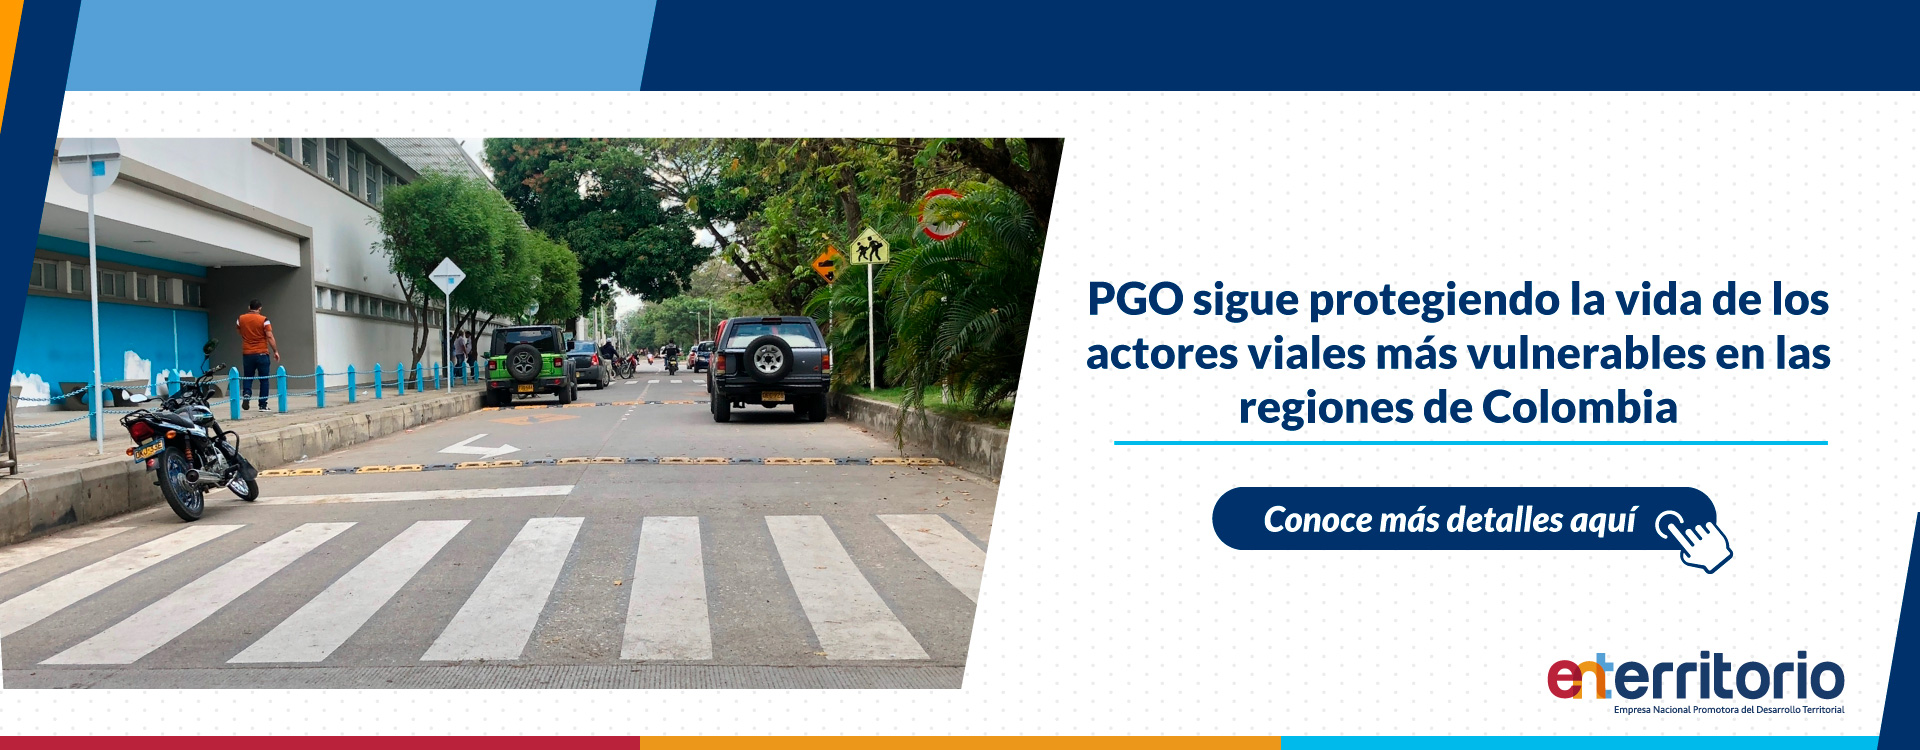 PGO sigue protegiendo la vida de los actores viales más vulnerables en las regiones de Colombia